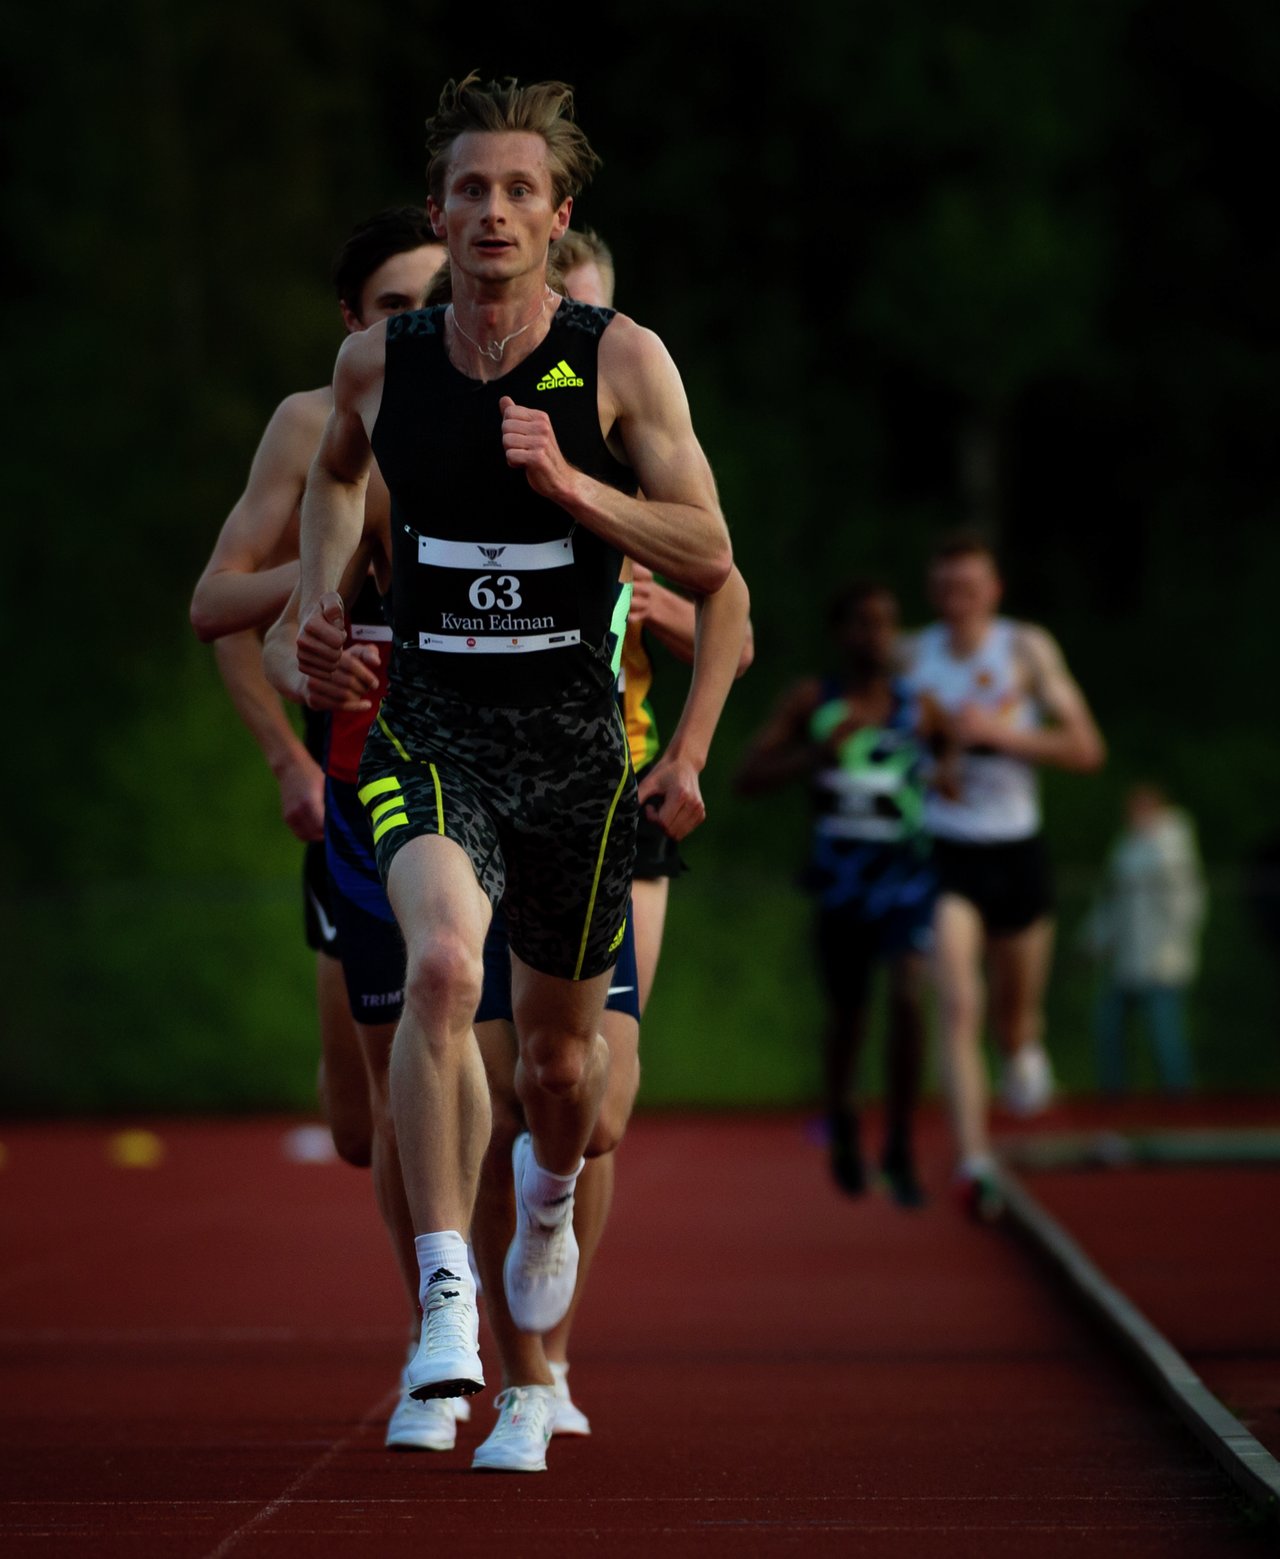 Per Halle Invitational - 5000m MS - Ferdinand Kvan Edman TJALVE  (63)